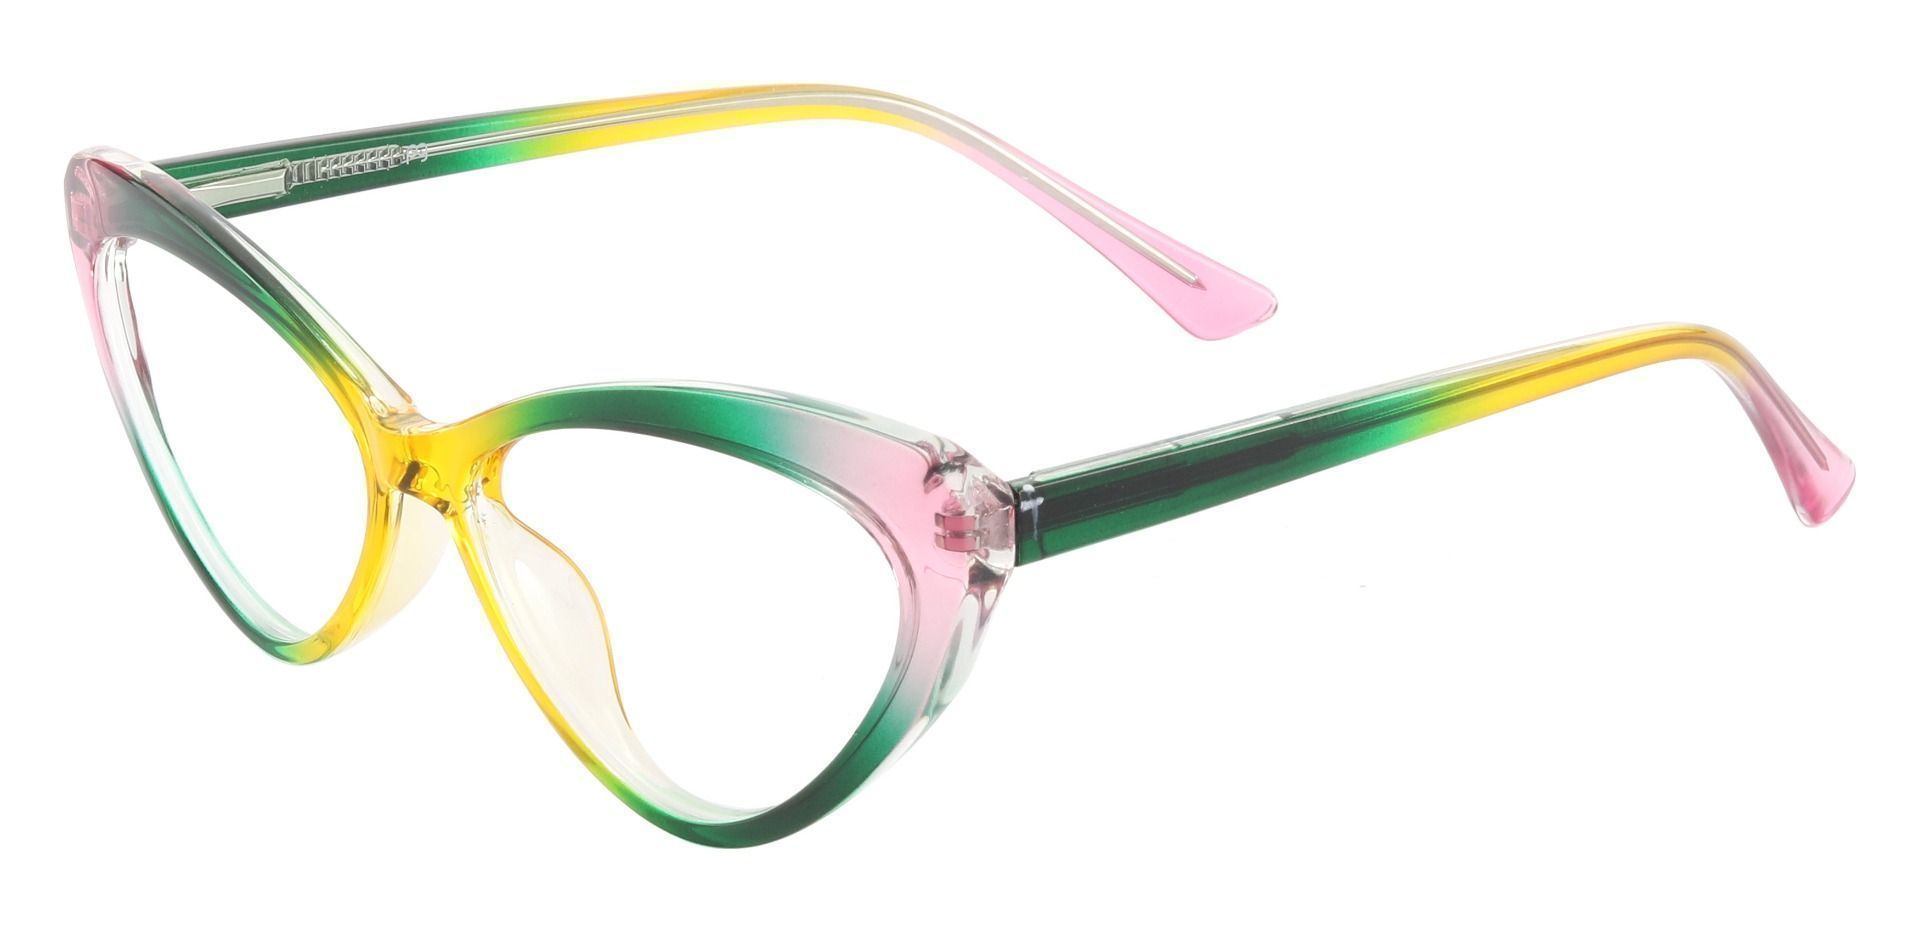 Avonlea Cat Eye Prescription Glasses - Two